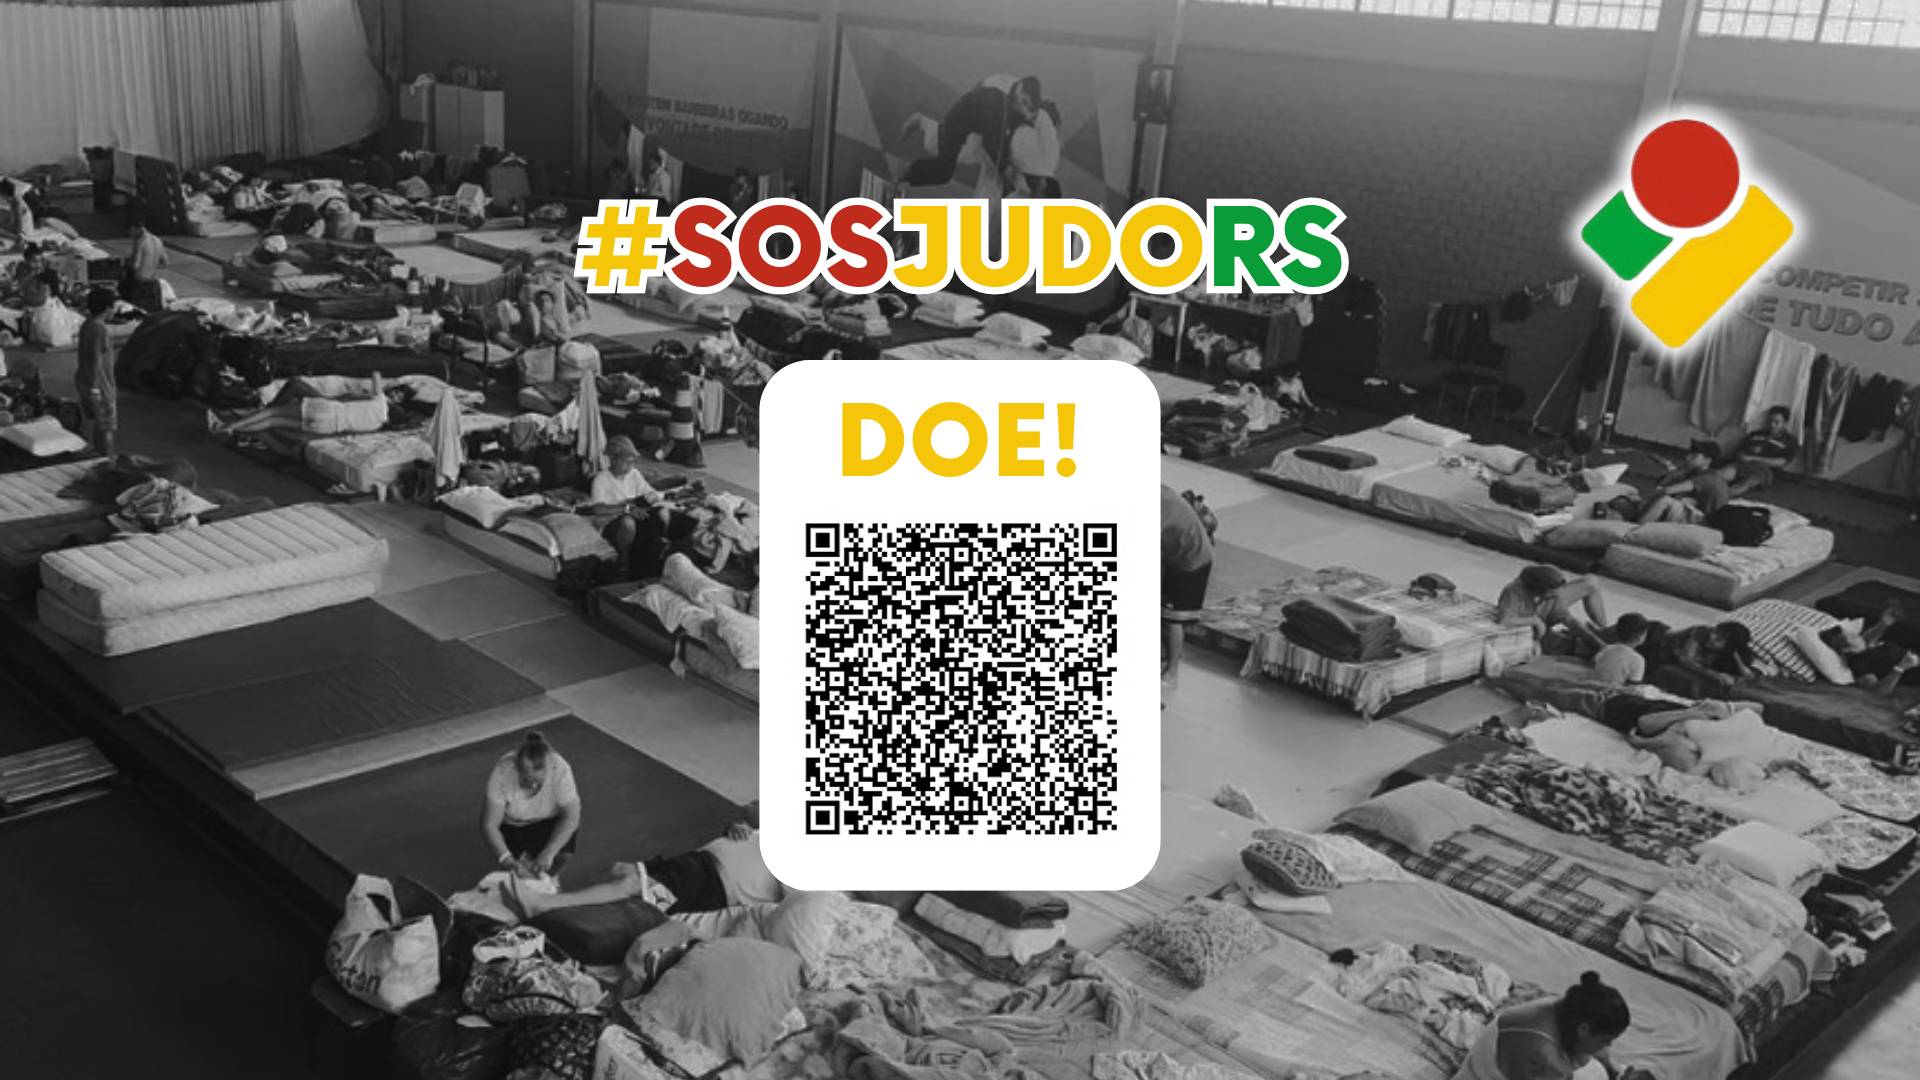 SOS Judo RS